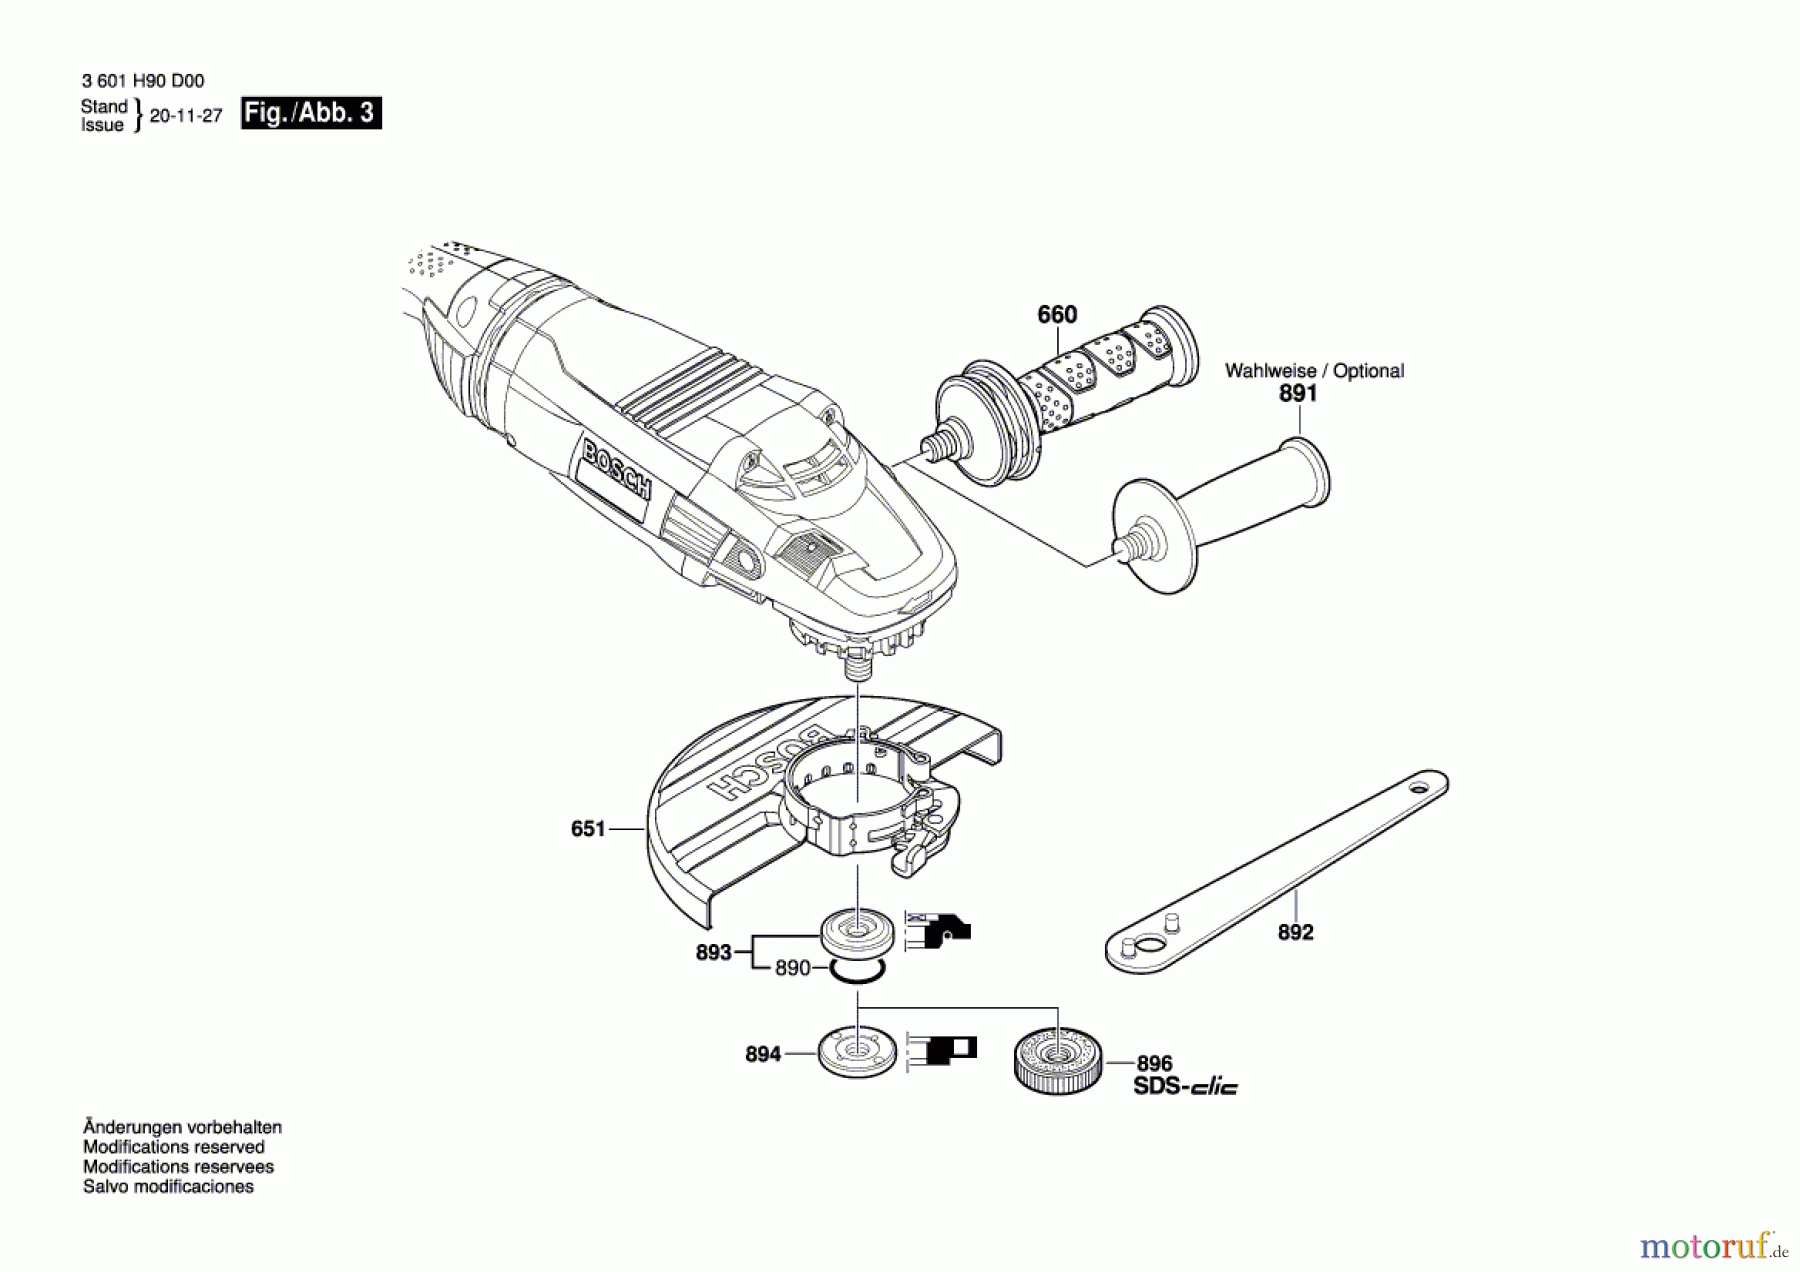  Bosch Werkzeug Winkelschleifer GWS 22-180 LVI Seite 3